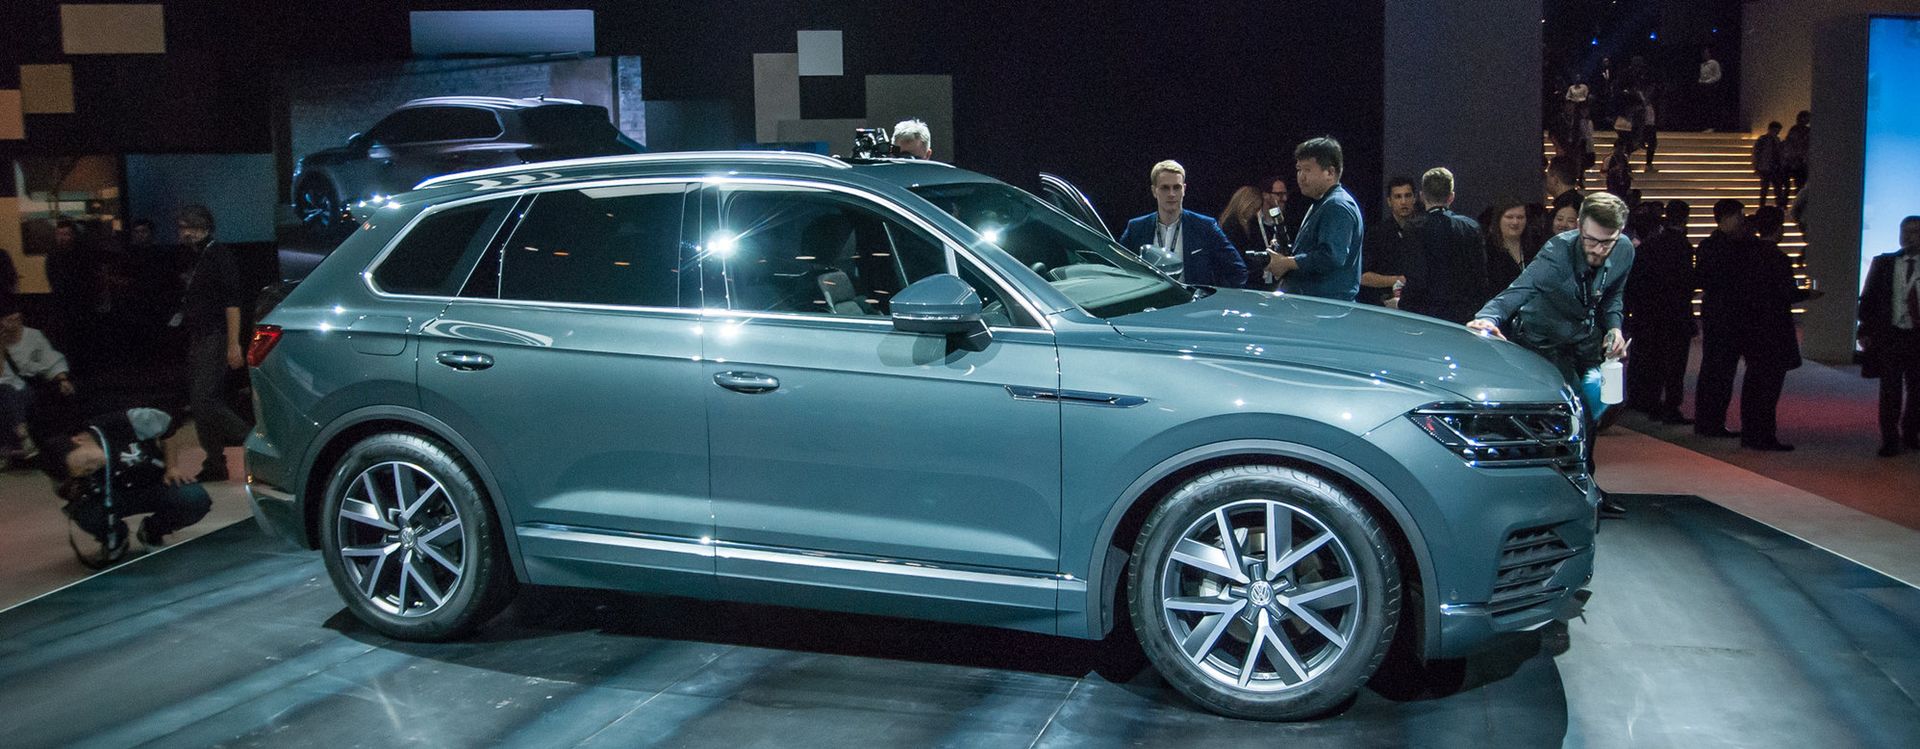 Volkswagen Touareg w nowej odsłonie powstał z myślą o chińskim rynku.